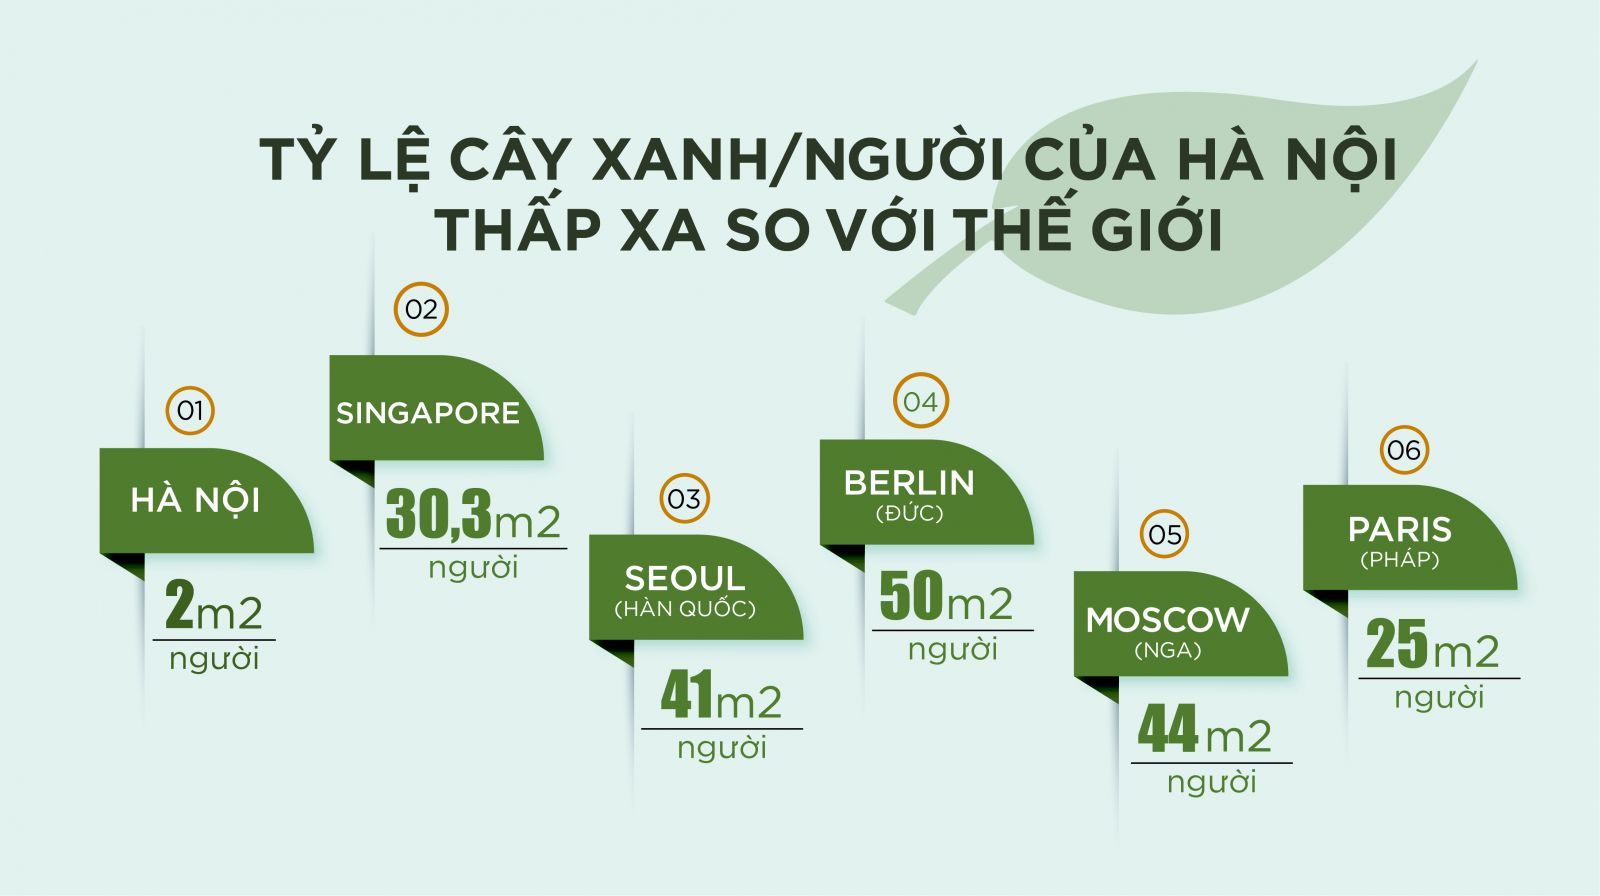 Chỉ tiêu công viên cây xanh tại Hà Nội so với các Thành phố trên thế giới.